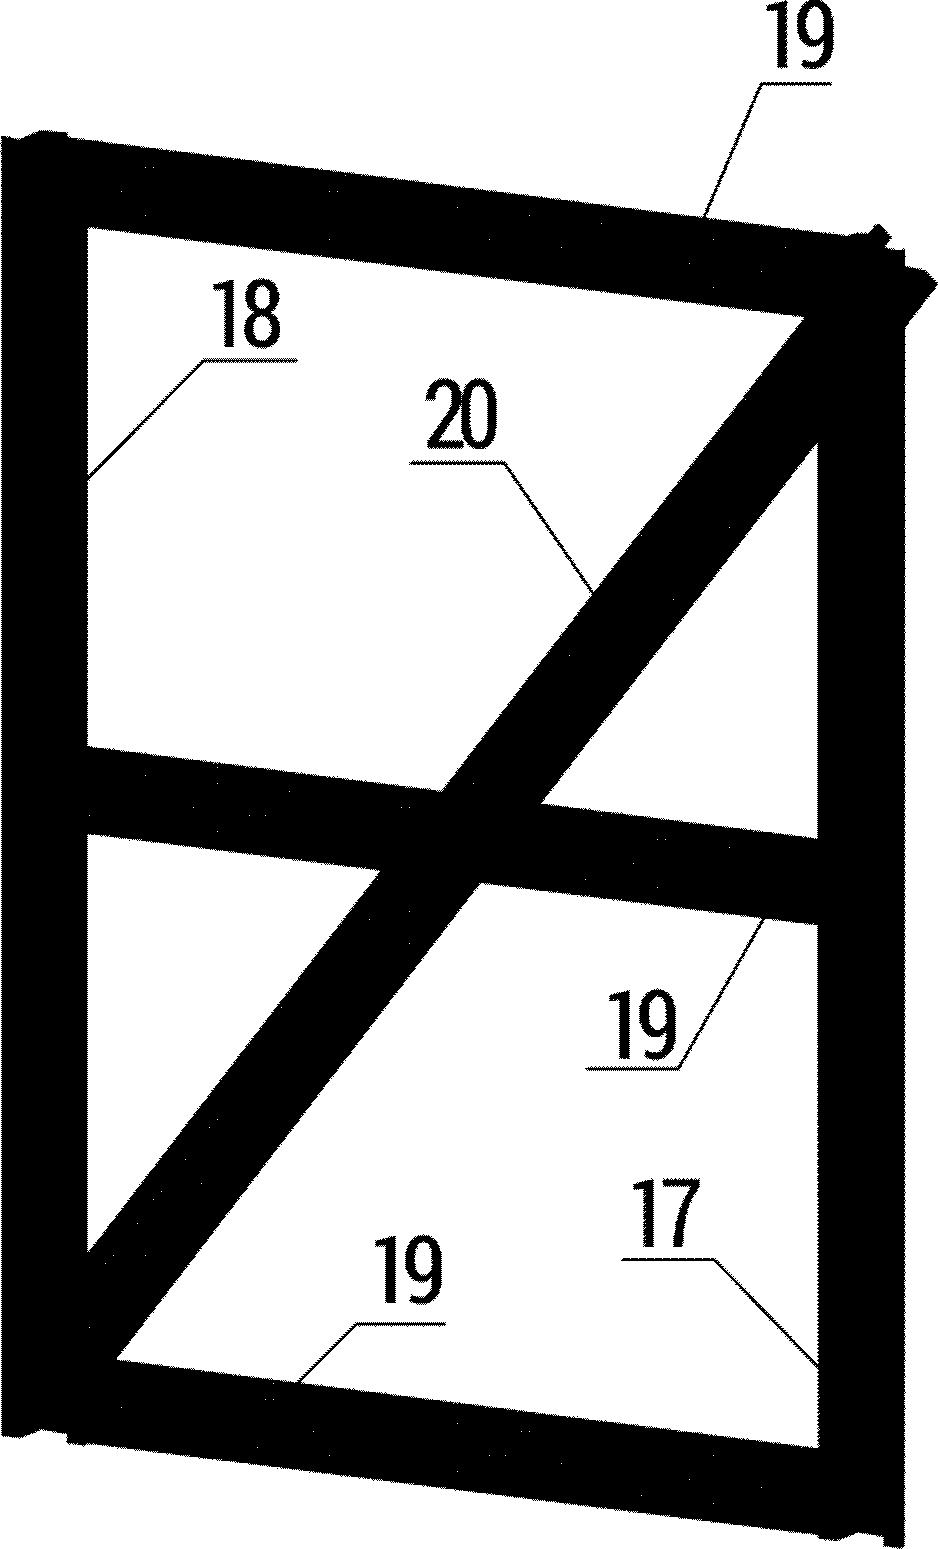 SESTAVENÍ DVEŘÍ Skleník má dveře na pantech v předním i zadním čele. Každé dveře jsou složeny ze dvou stejných částí (horní a spodní část).